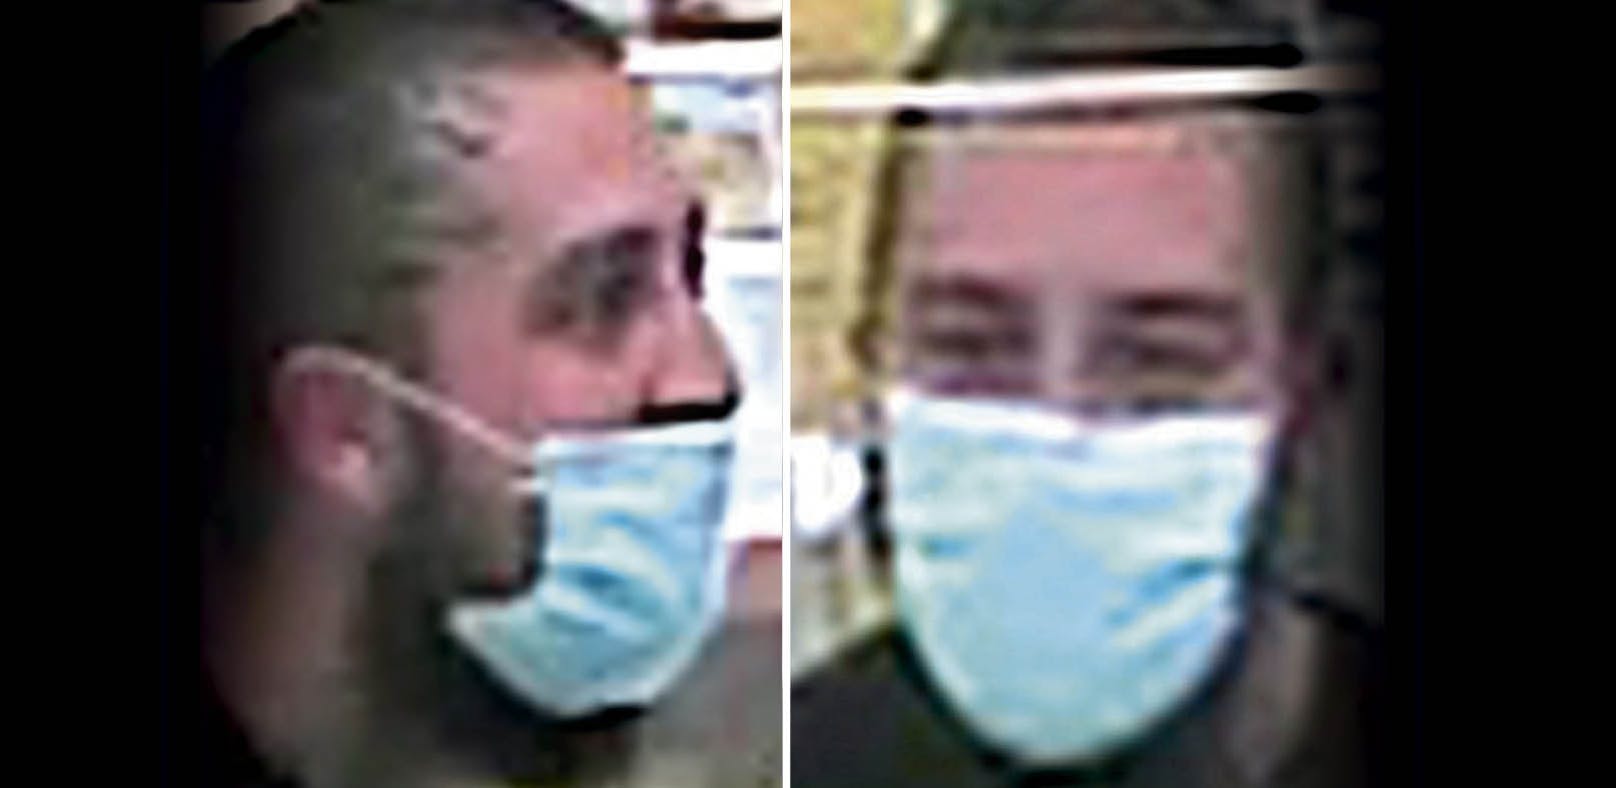 Die Polizei veröffentlichte am Donnerstag Fotos des mutmaßlichen Angreifers. Er soll einen Angestellten in Linz mit einem Messer bedroht haben.